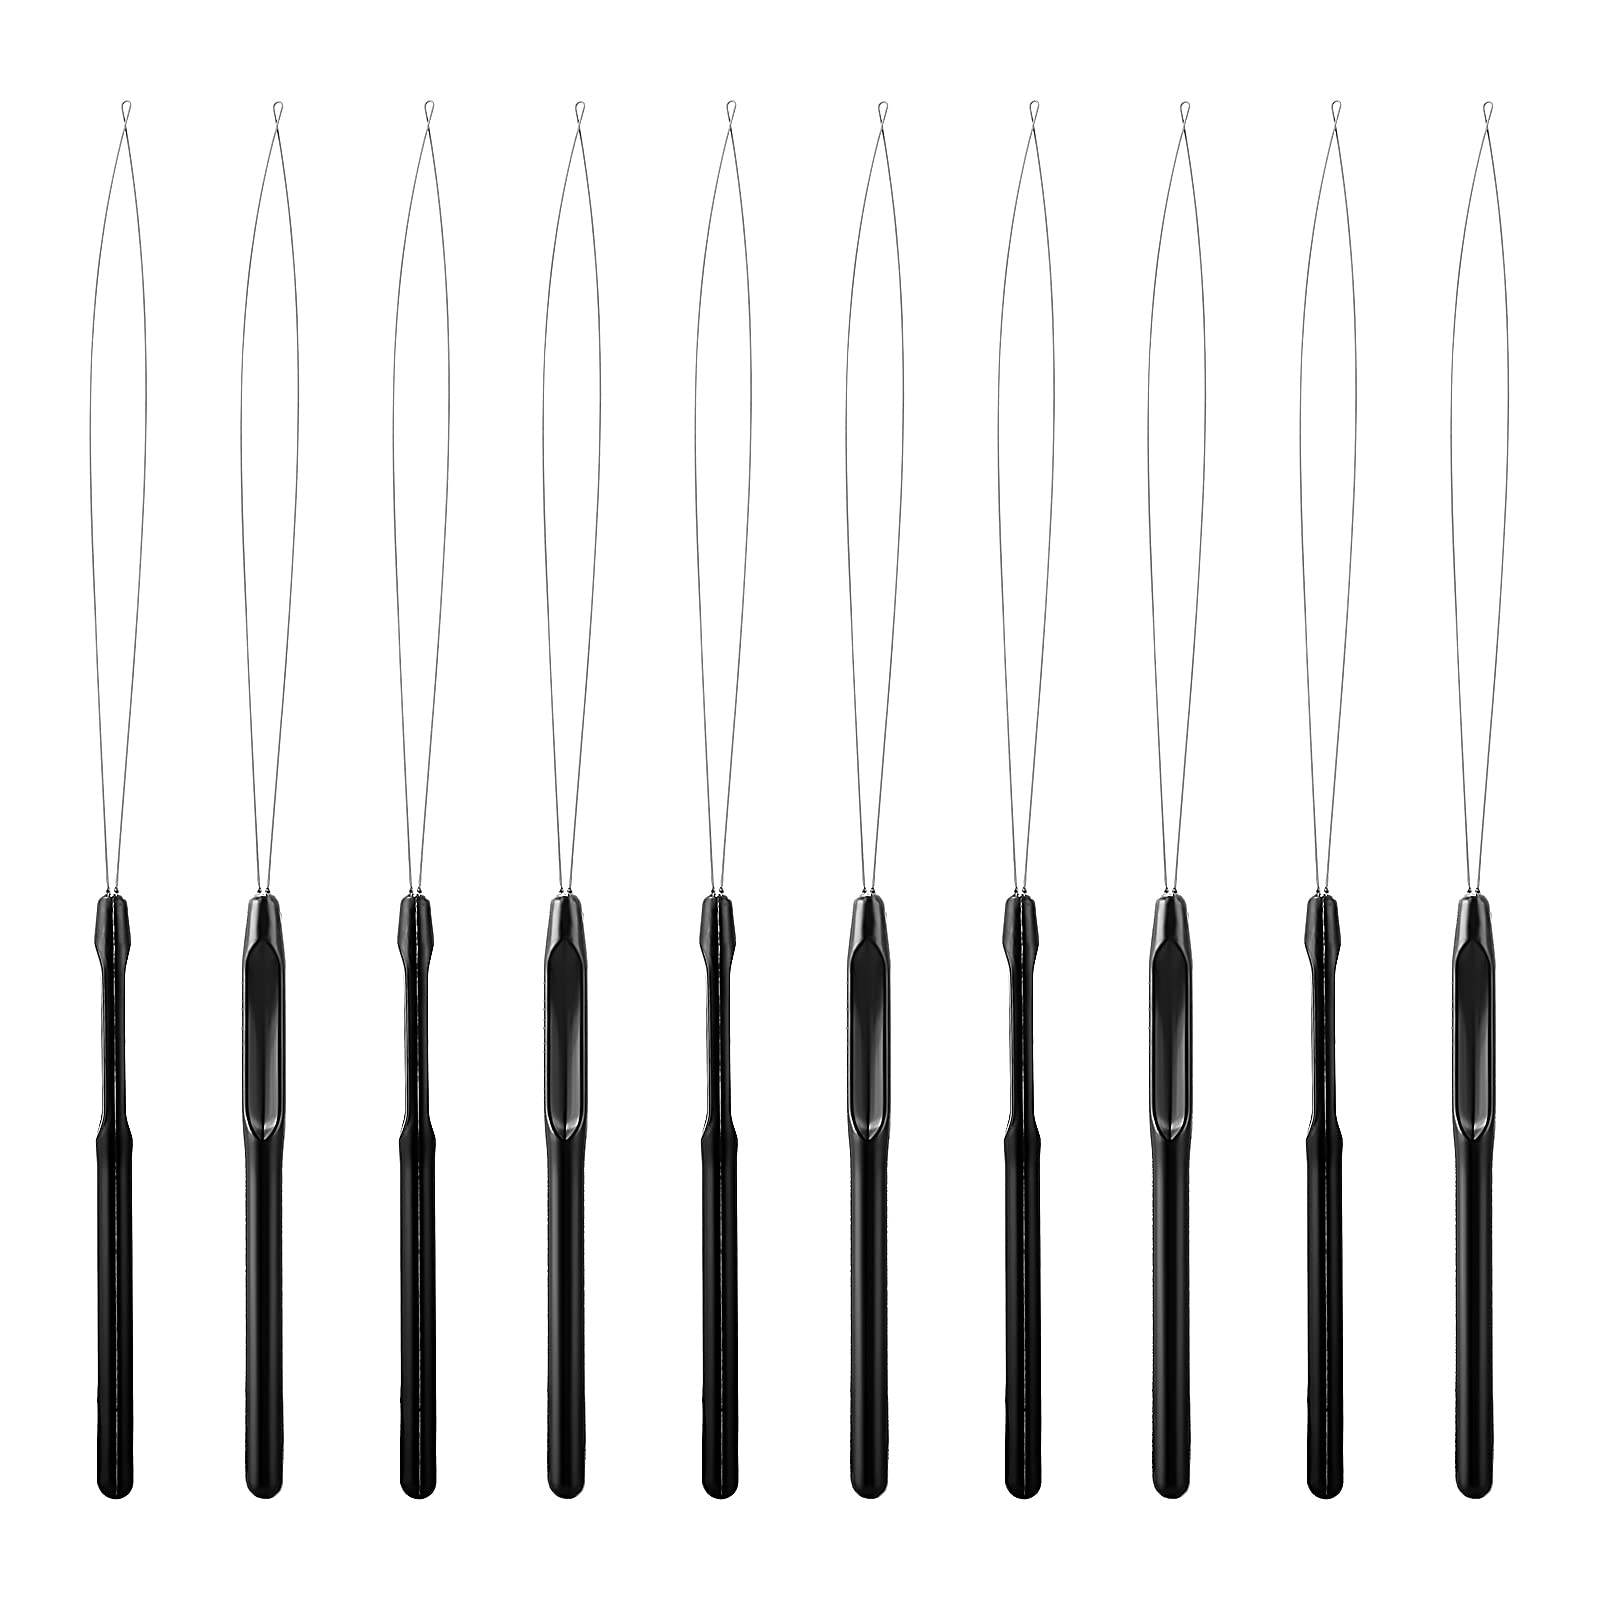 10 Pieces Hair Extension Loop Needle Threader Pulling Hook Tool and Bead  Device Tool Black Loop Threader for Hair or Feather Extensions (Black)